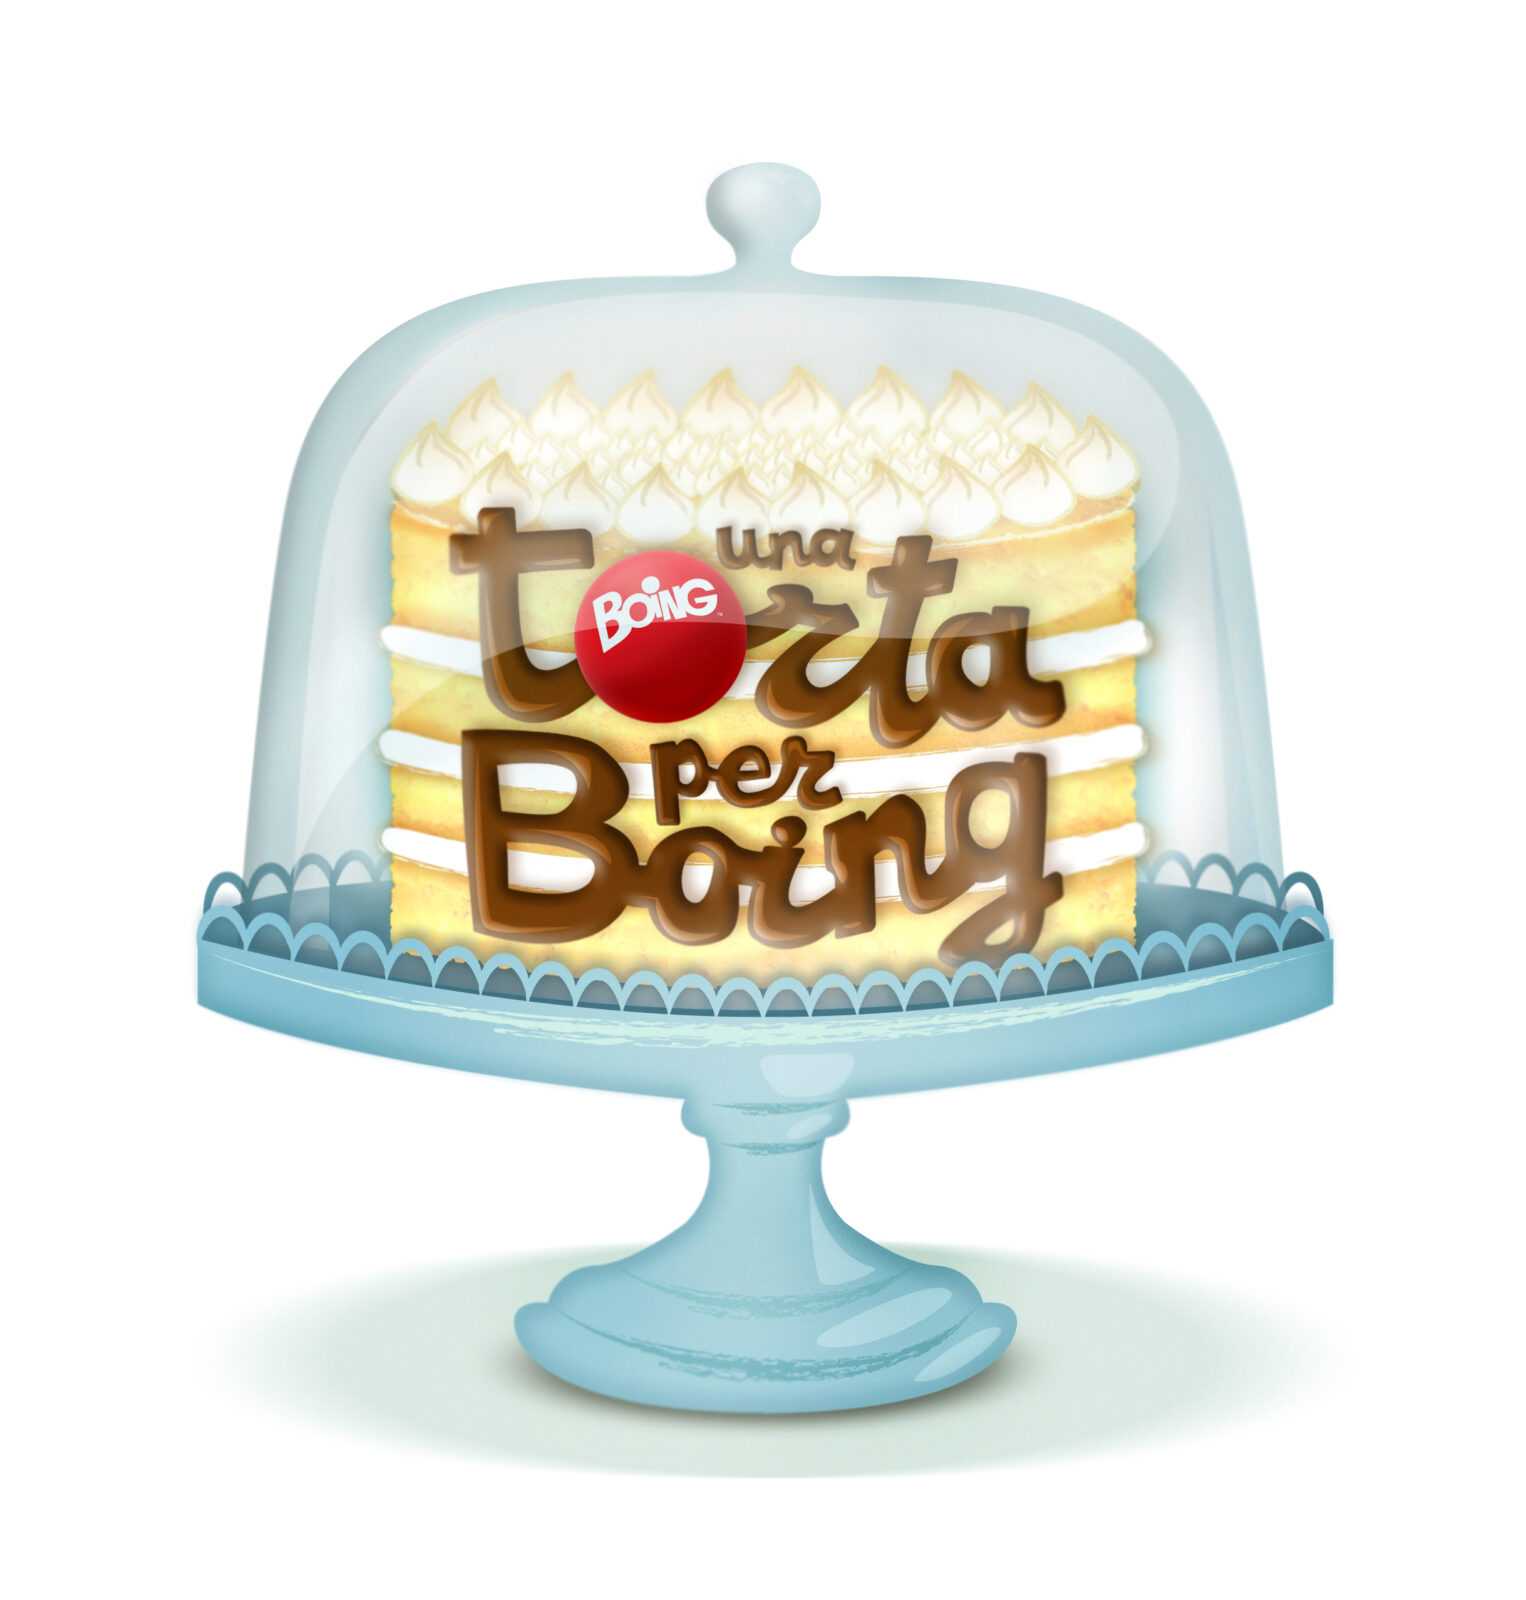 Compleanno Boing TV: si fa festa con il concorso "Una torta per Boing"  | Digitale terrestre: Dtti.it